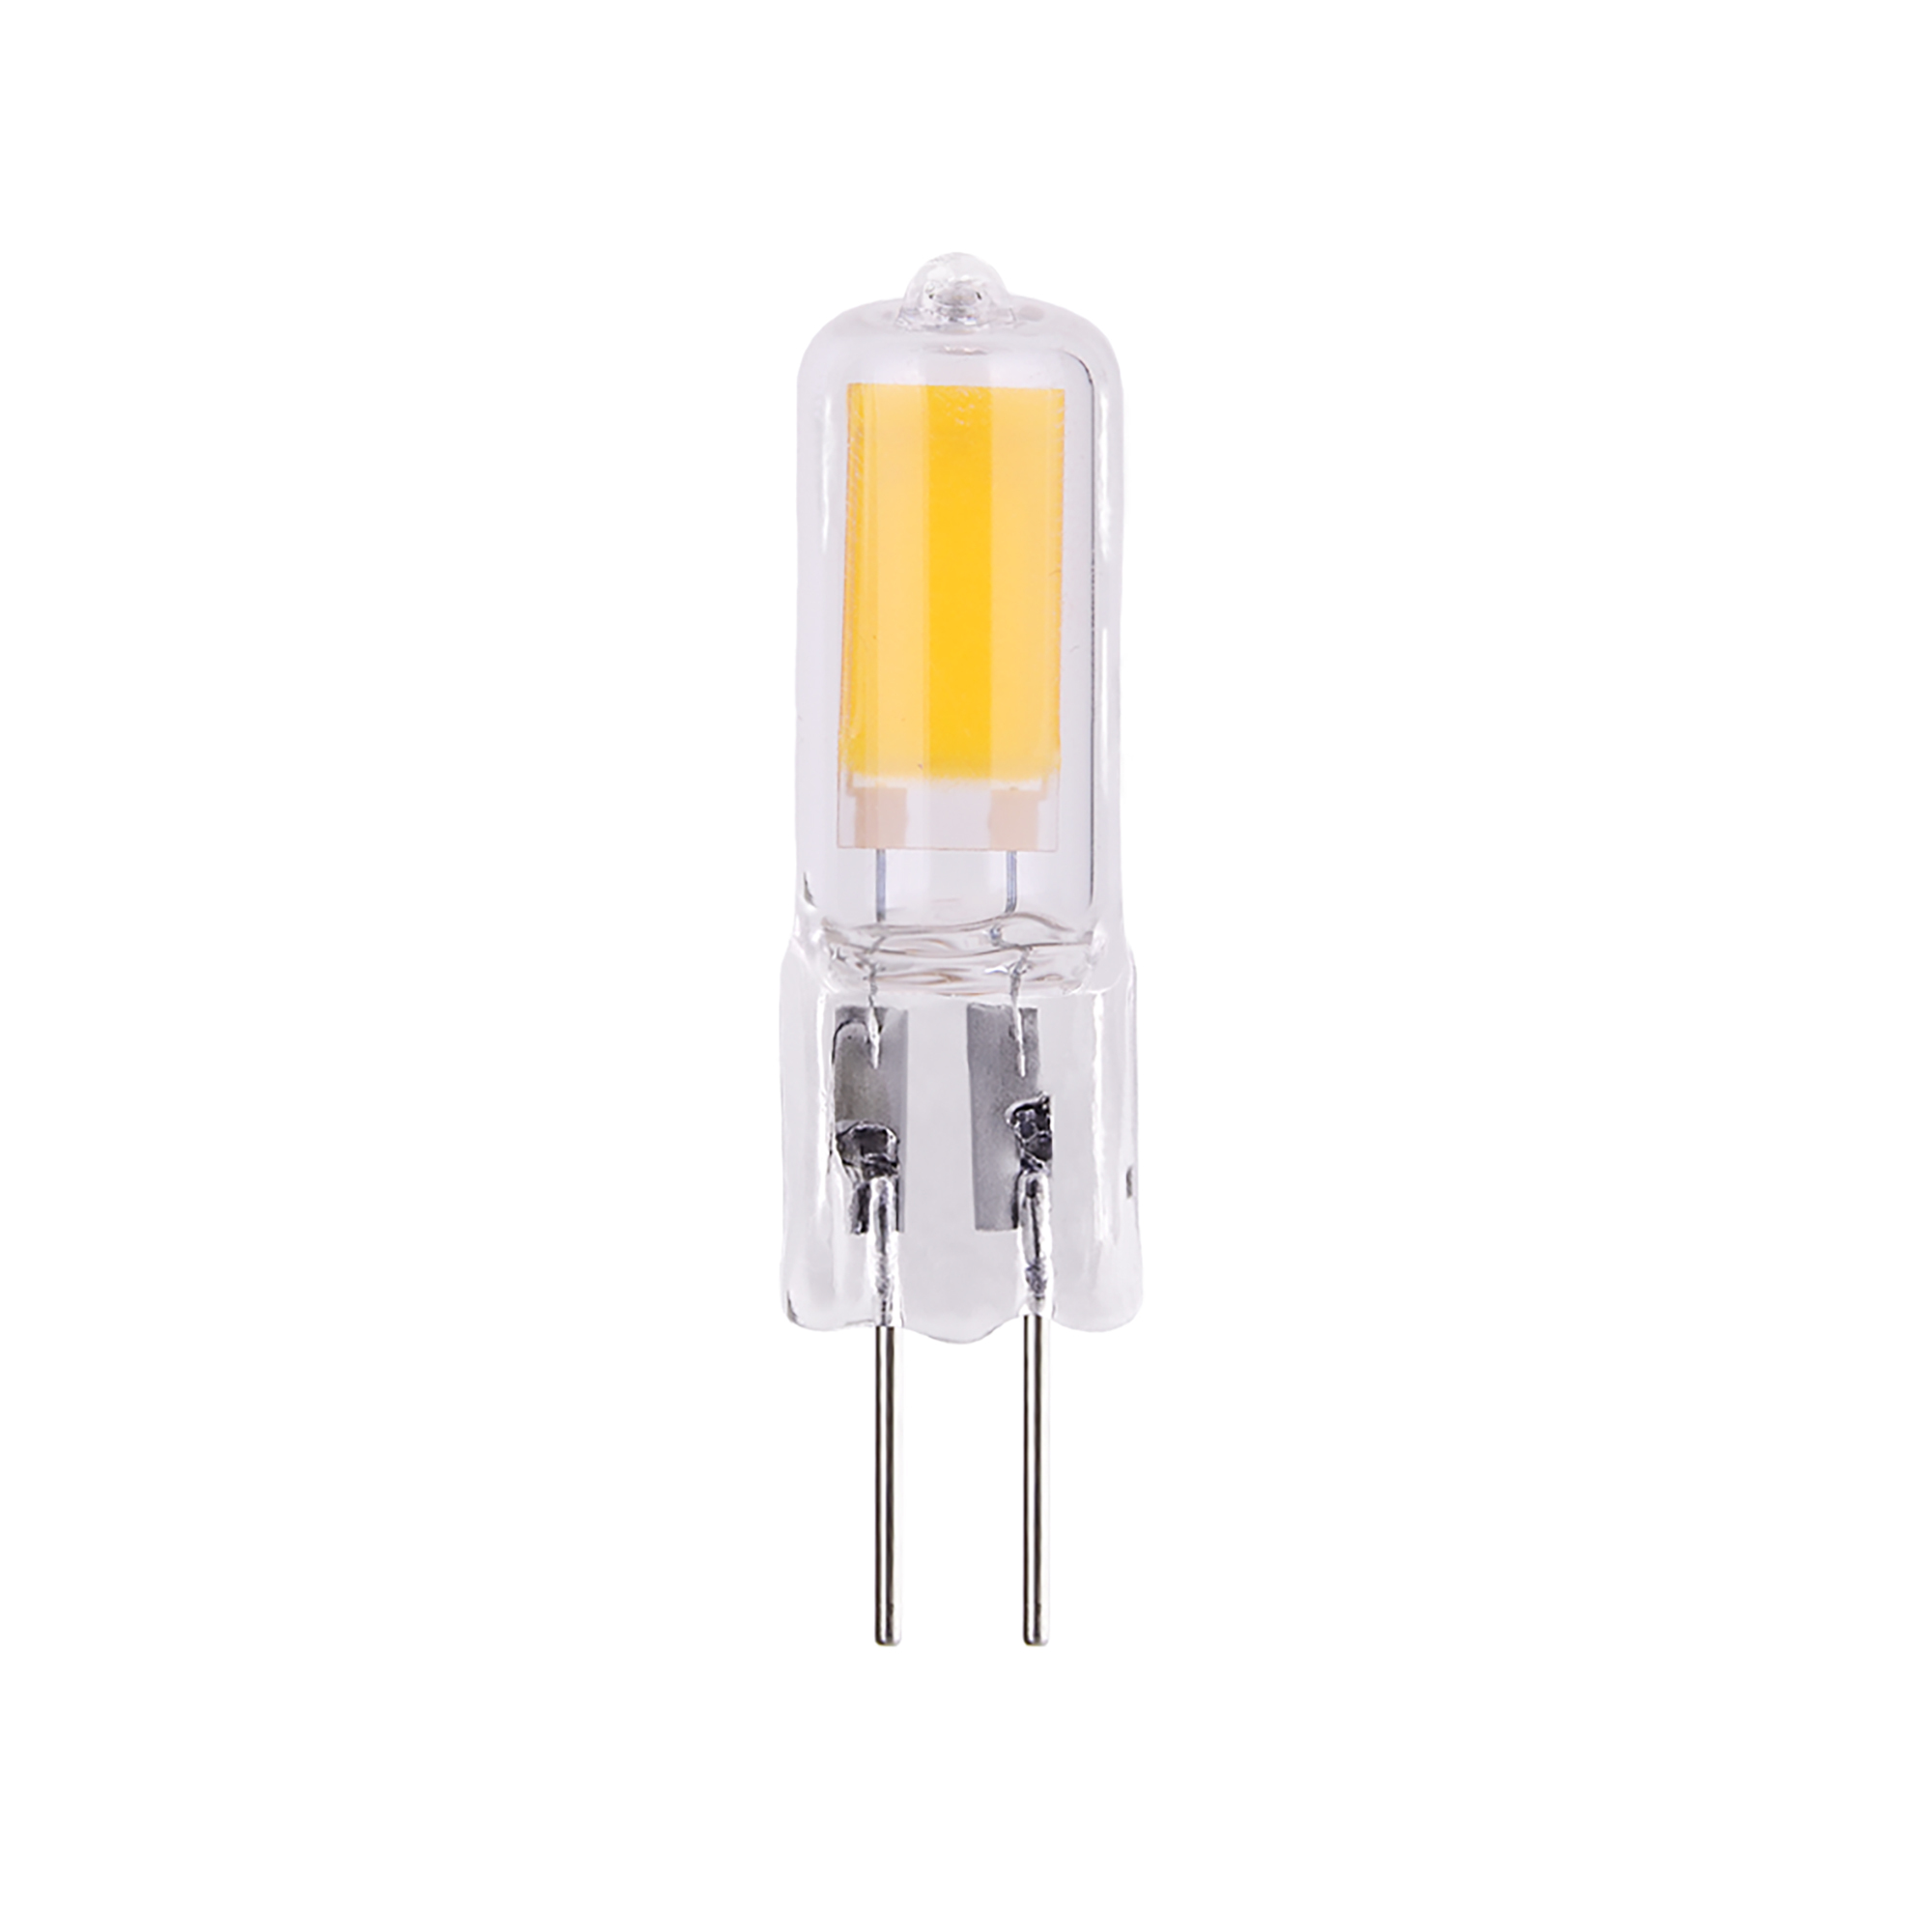 Лампа светодиодная Elektrostandard G4 JCD 5 Вт 4200К естественный свет 220 В капсула (BLG420) лампа светодиодная elektrostandard g4 jcd 5 вт 4200к естественный свет 220 в капсула blg420